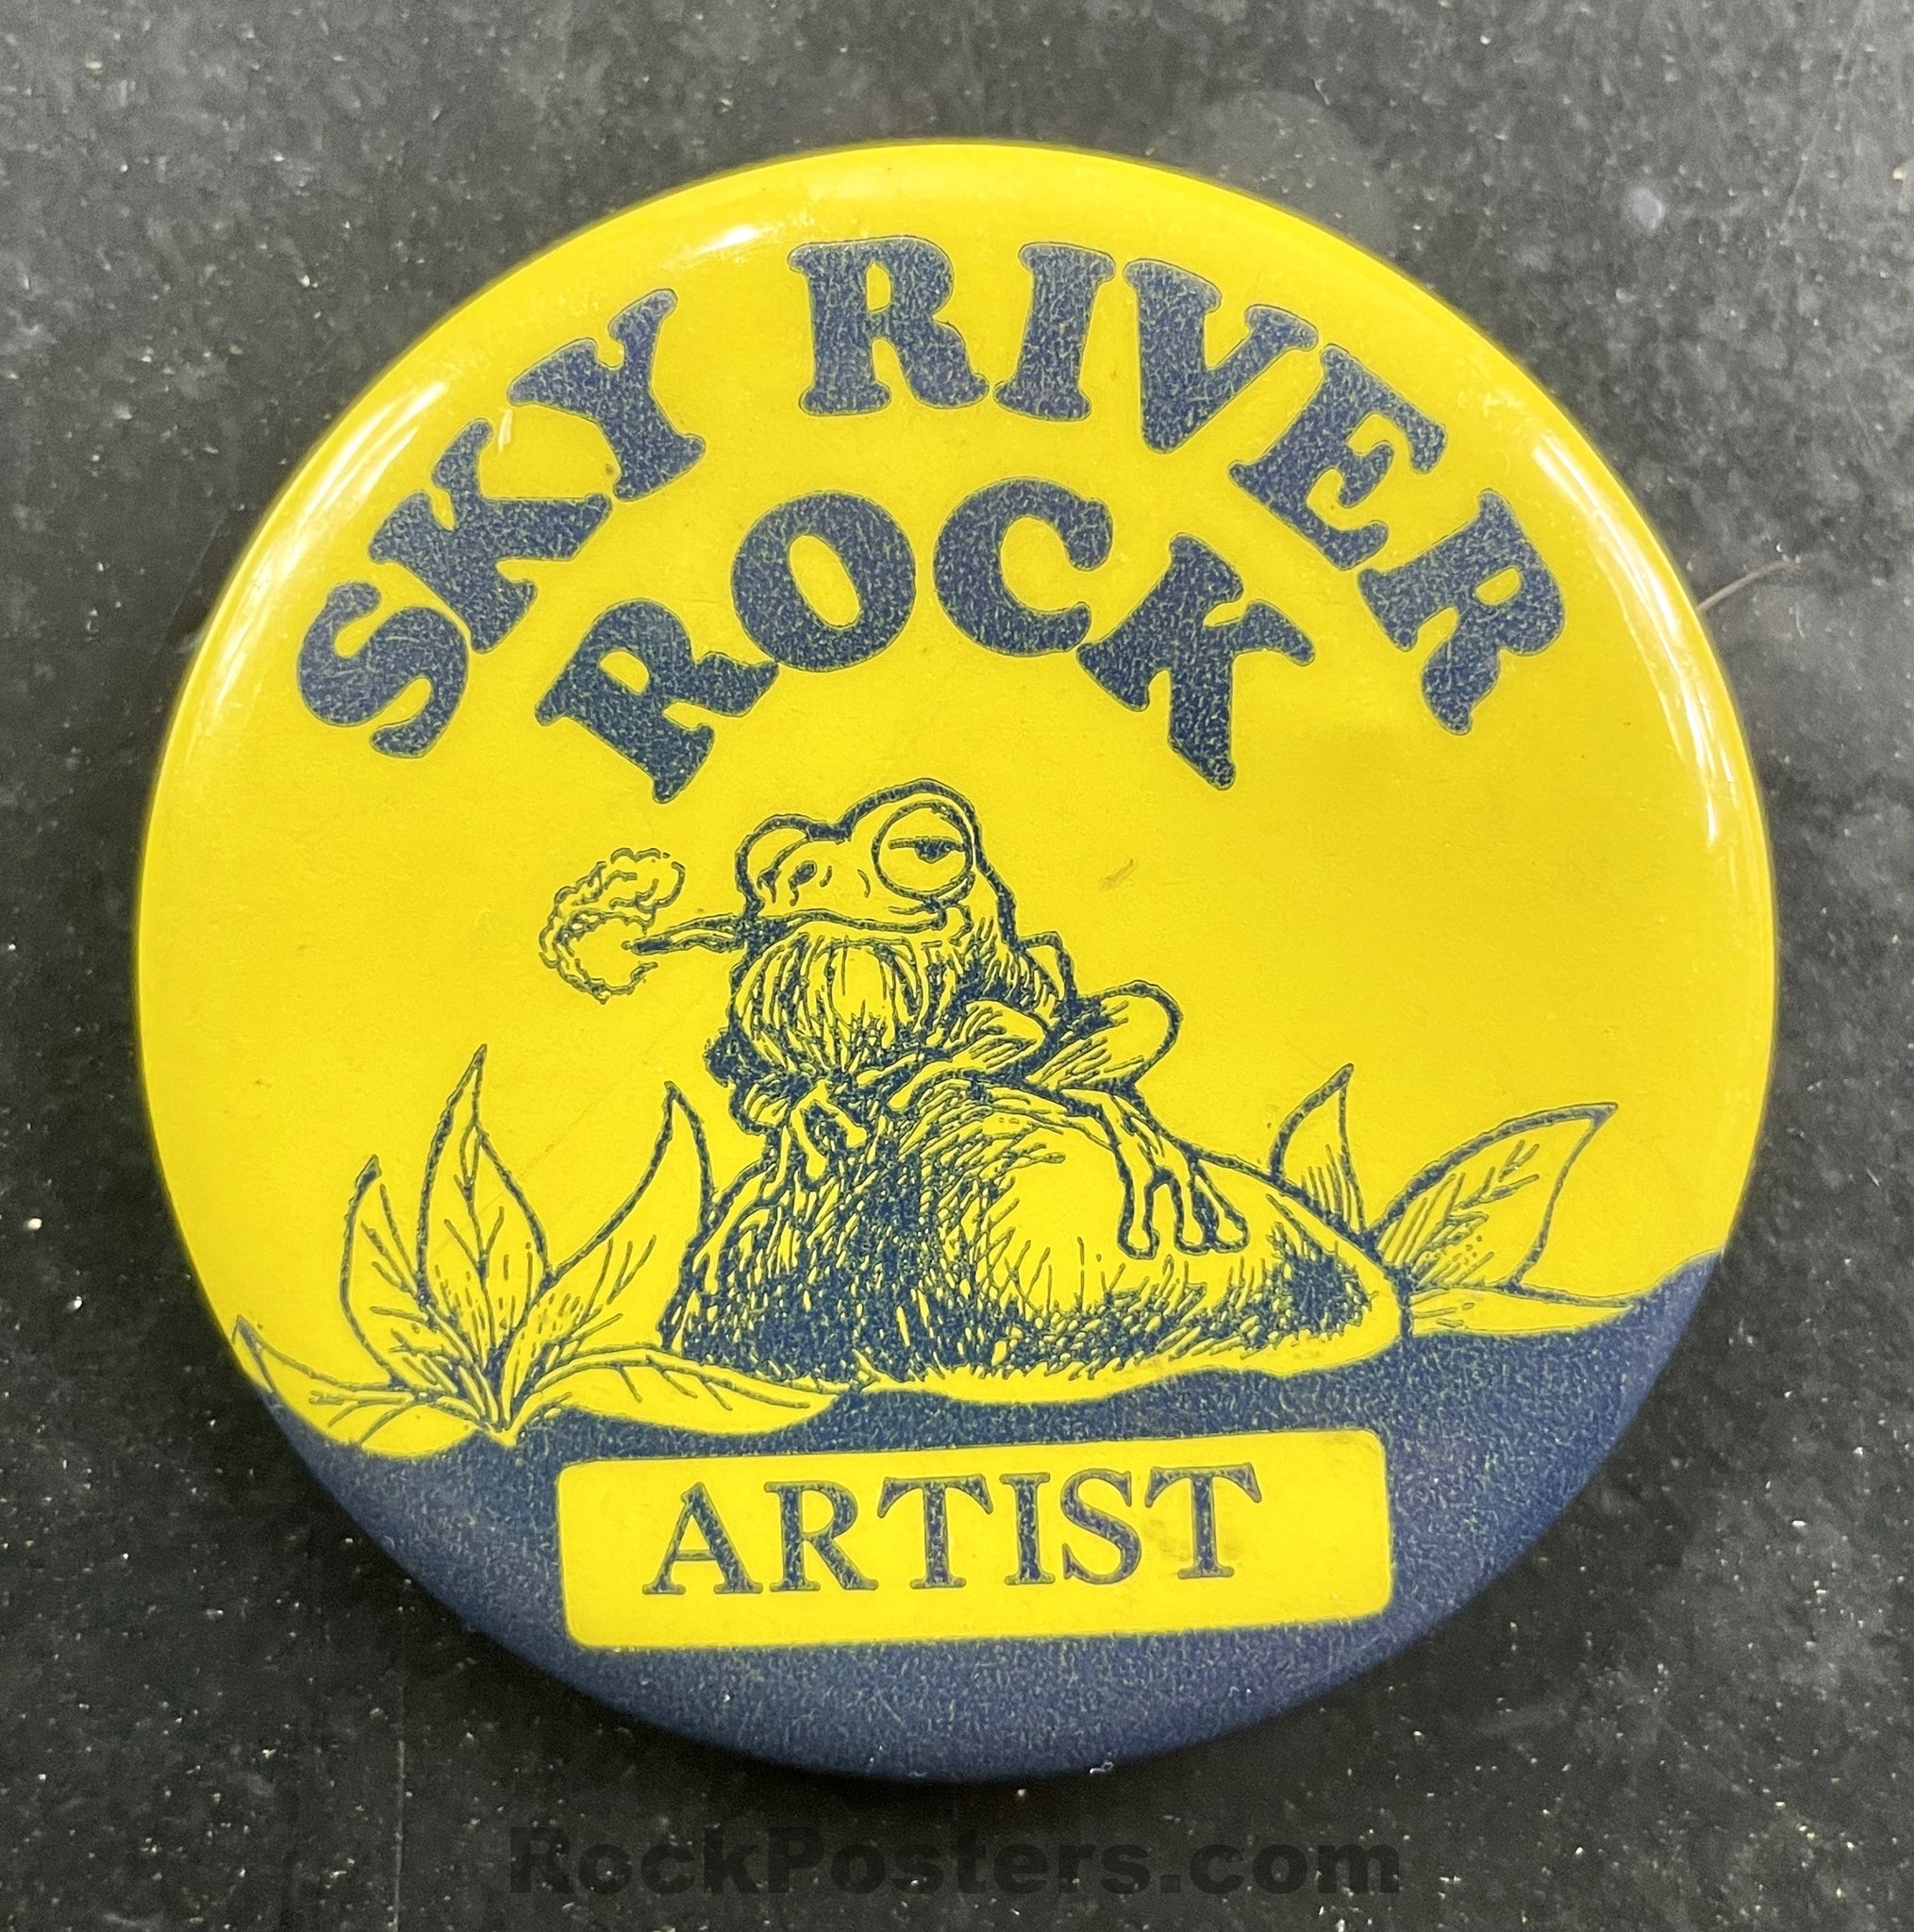 AUCTION - Sky River Festival - 1969 - Artist Backstage Button Pass - Excellent